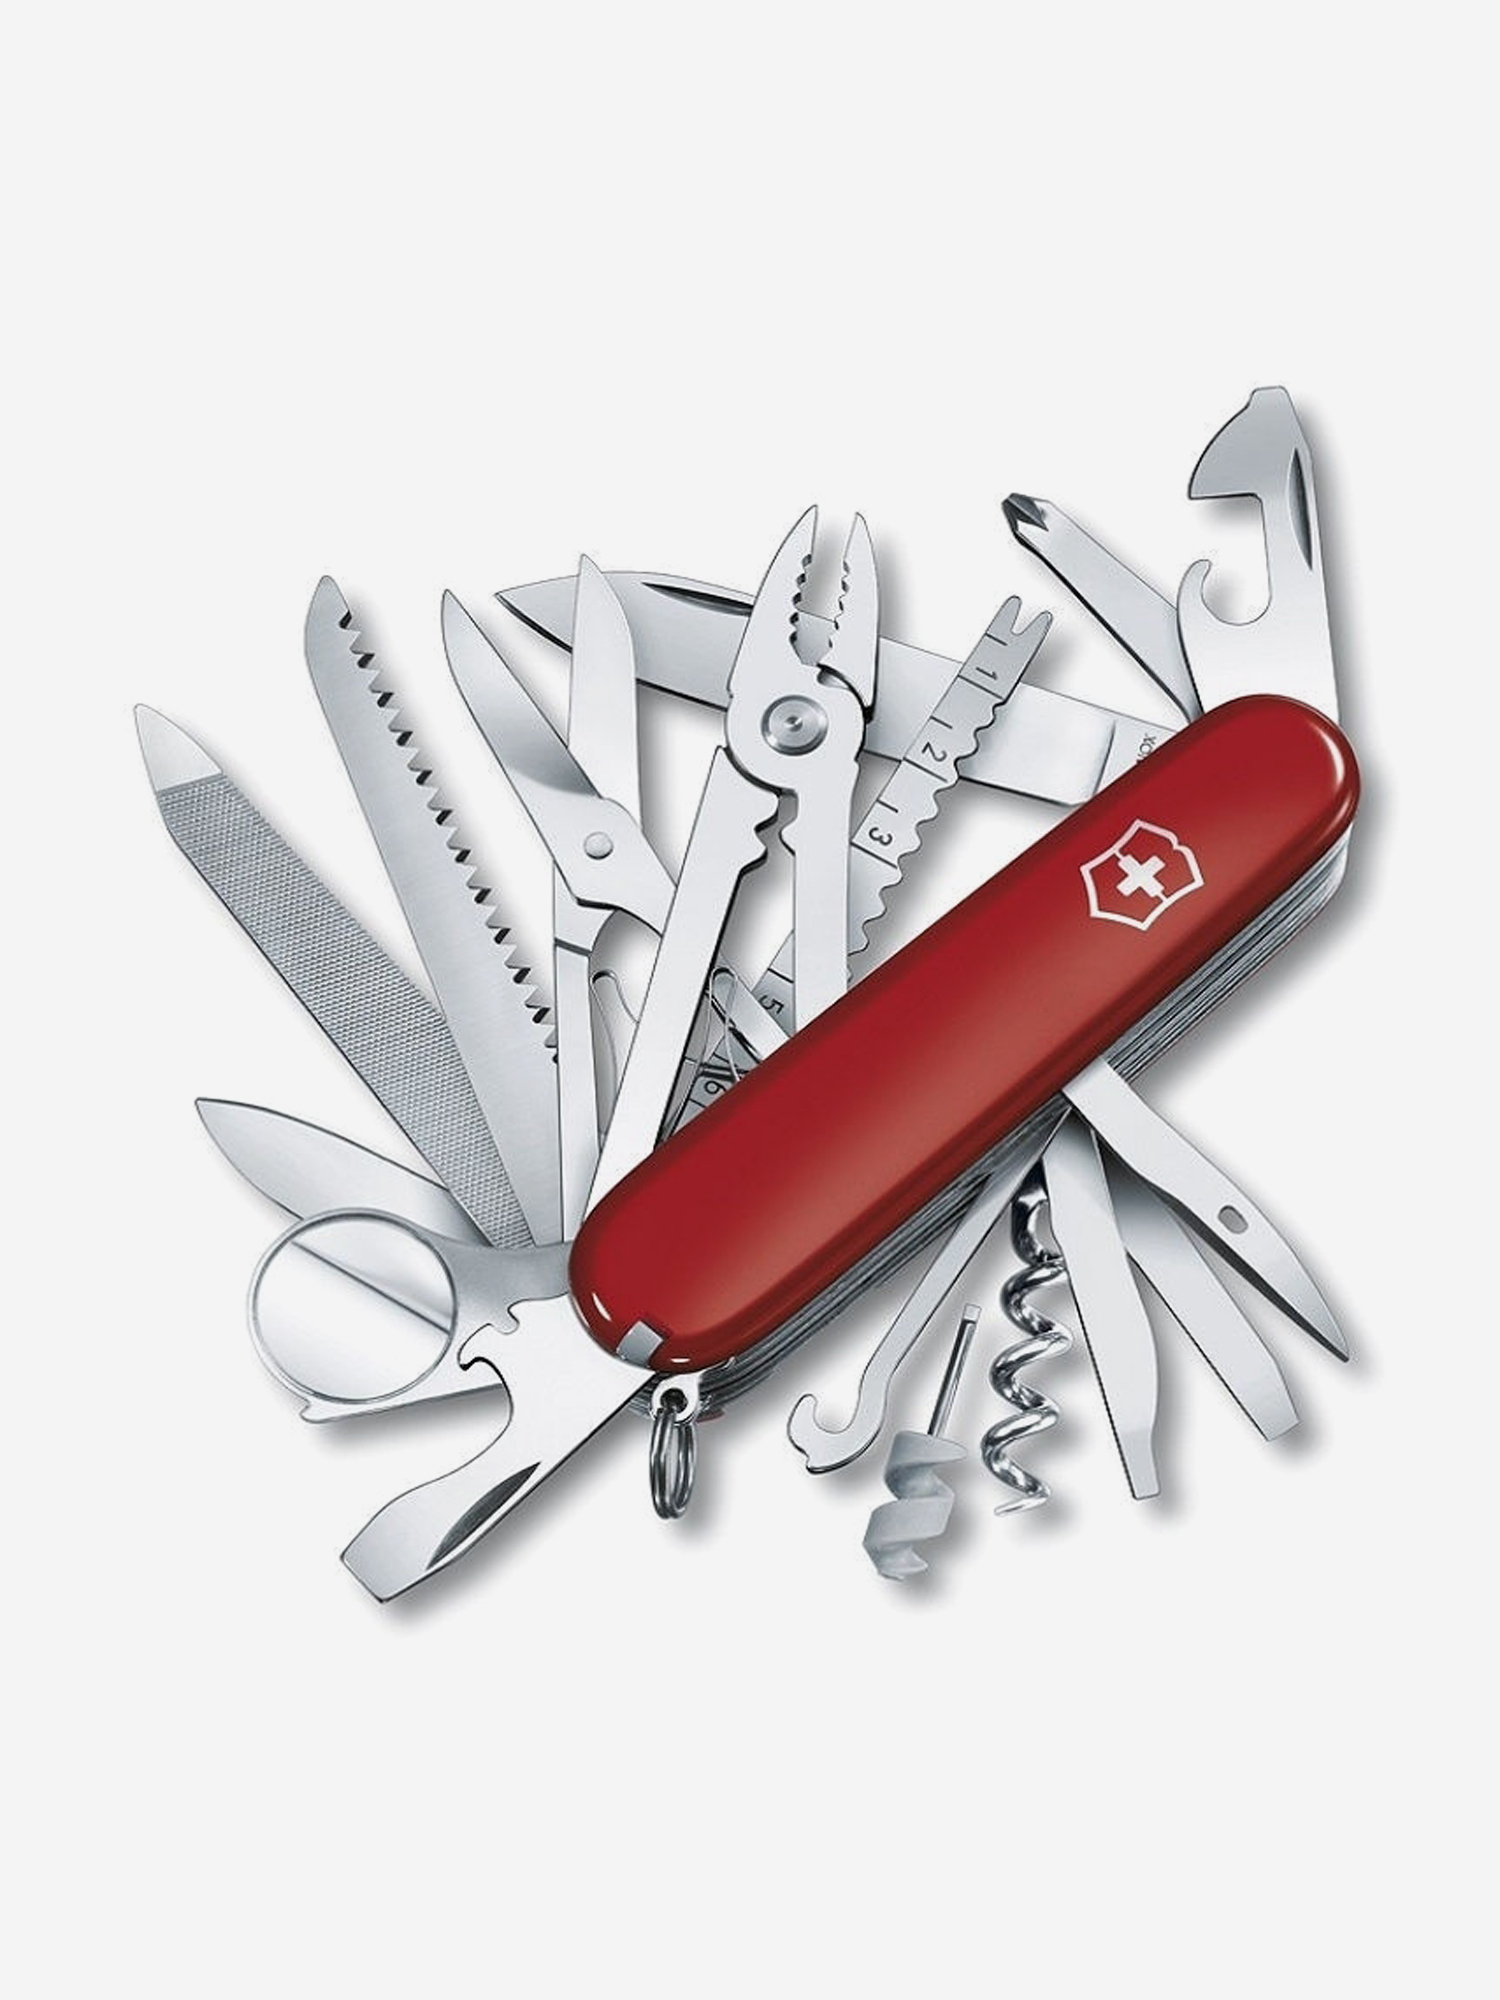 Нож складной Victorinox SwissChamp, 91 мм, 33 функции, Красный victorinox нож кухонный swiss modern стальной столовый 110 мм